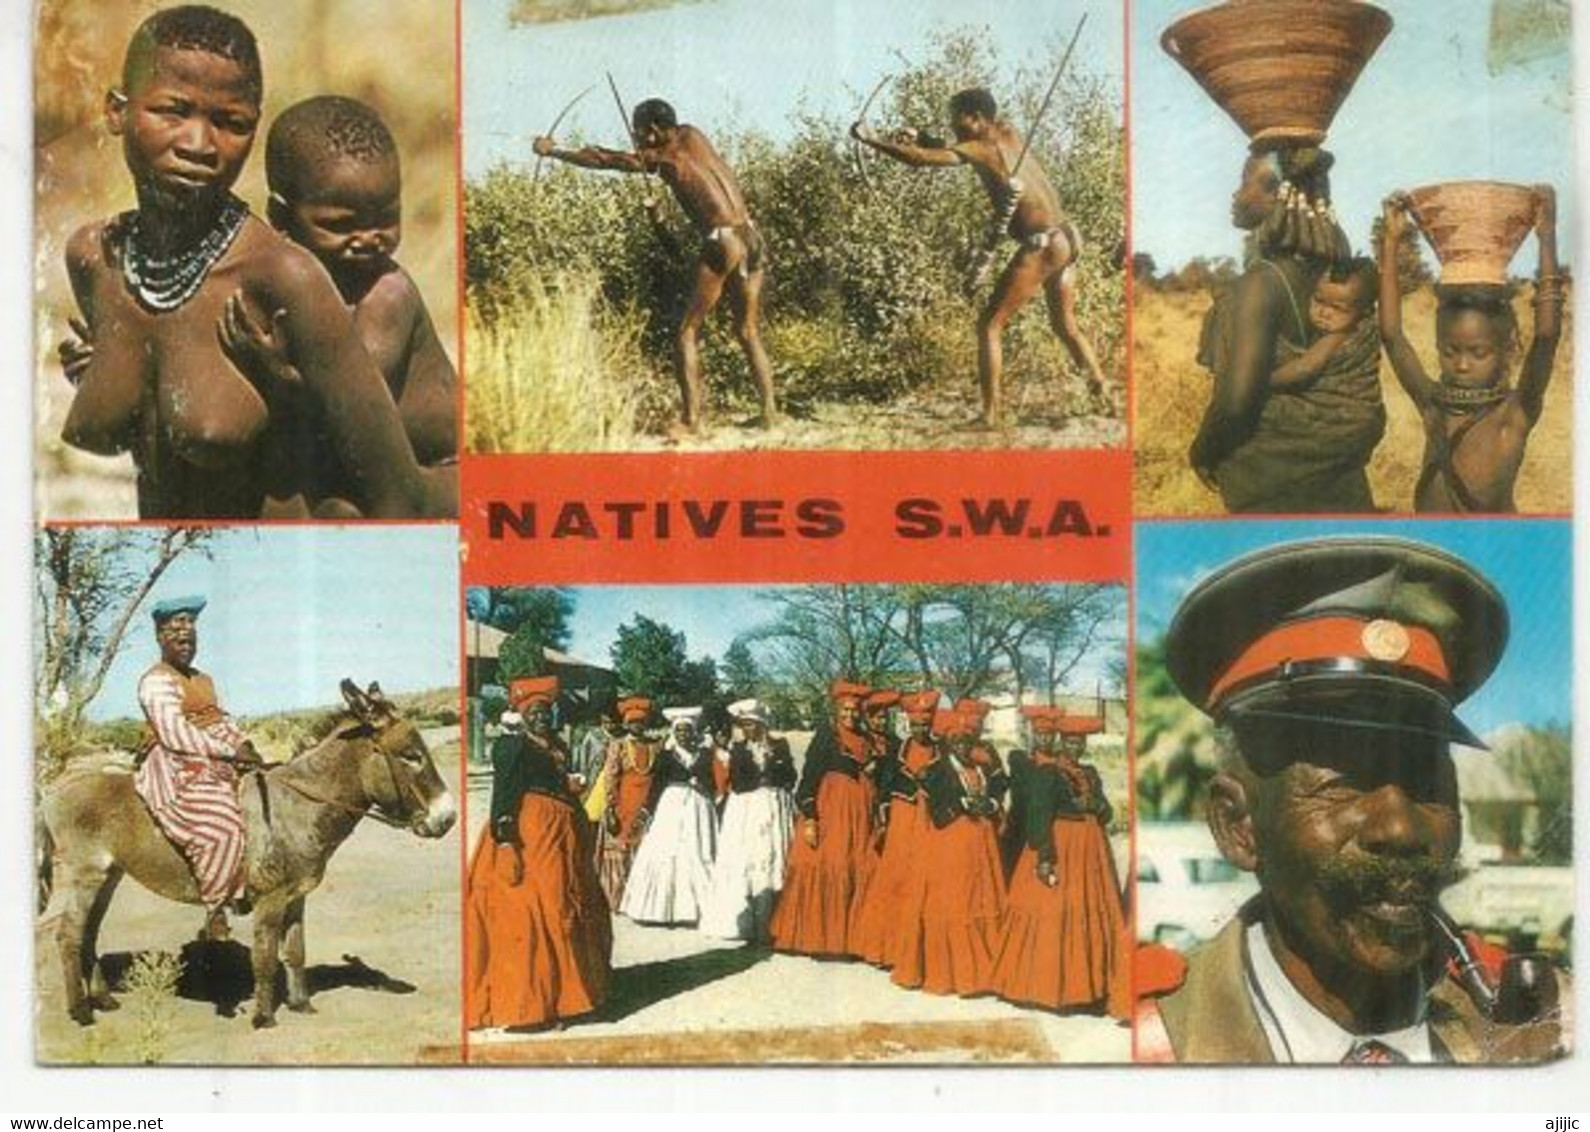 Natives S.W.A , Carte Postale Du Sud-Ouest Africain, Adressée à Andorra - Namibië